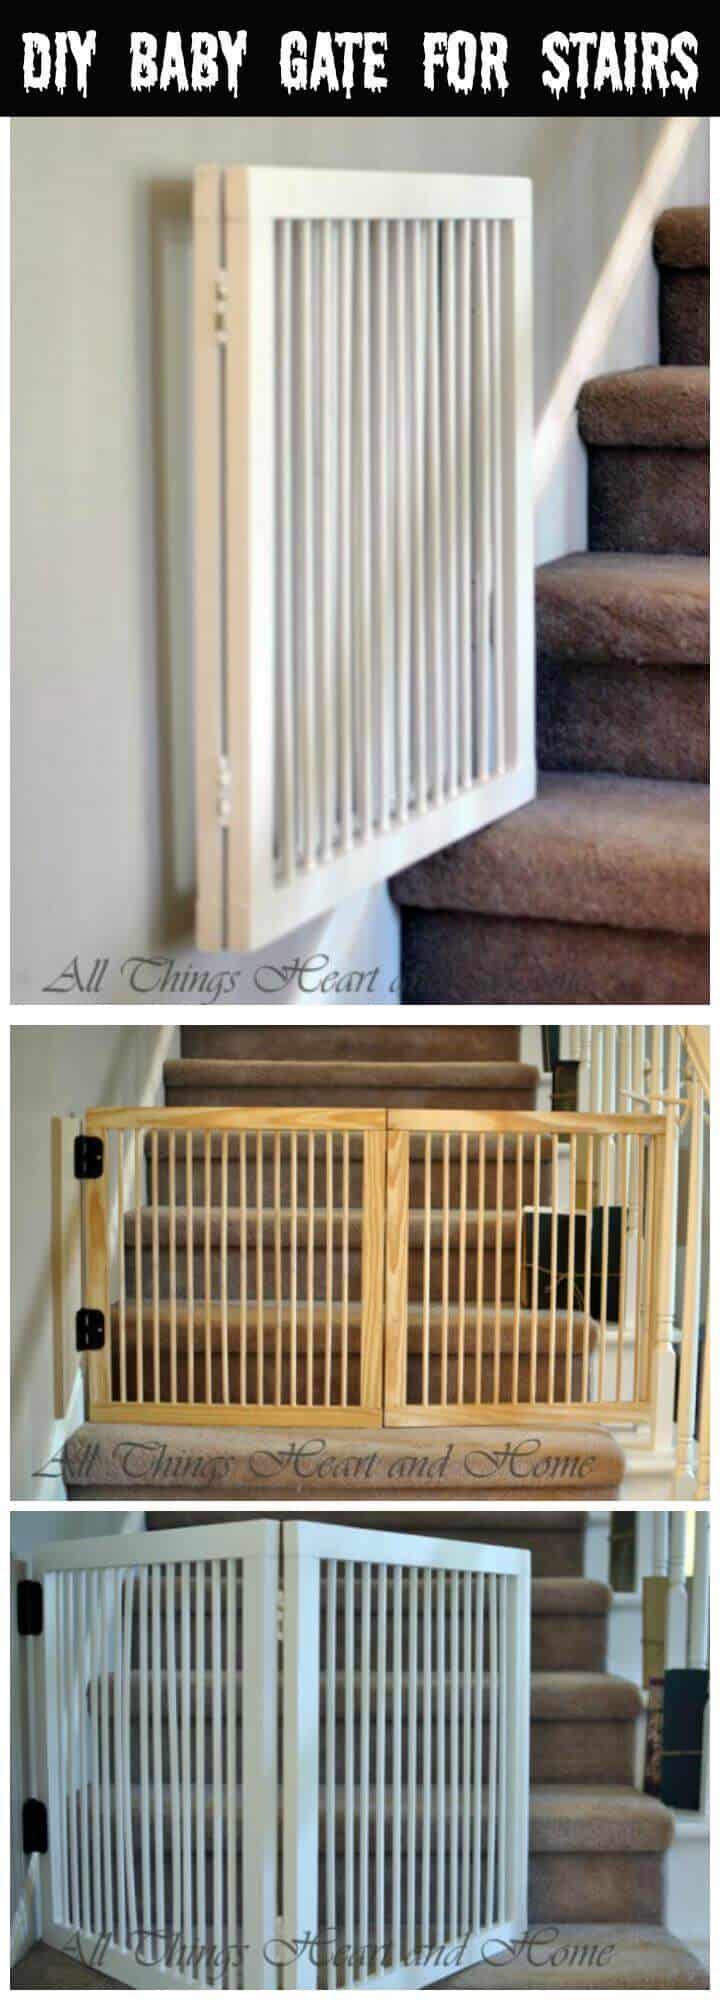 puerta de bebé fácil para escaleras